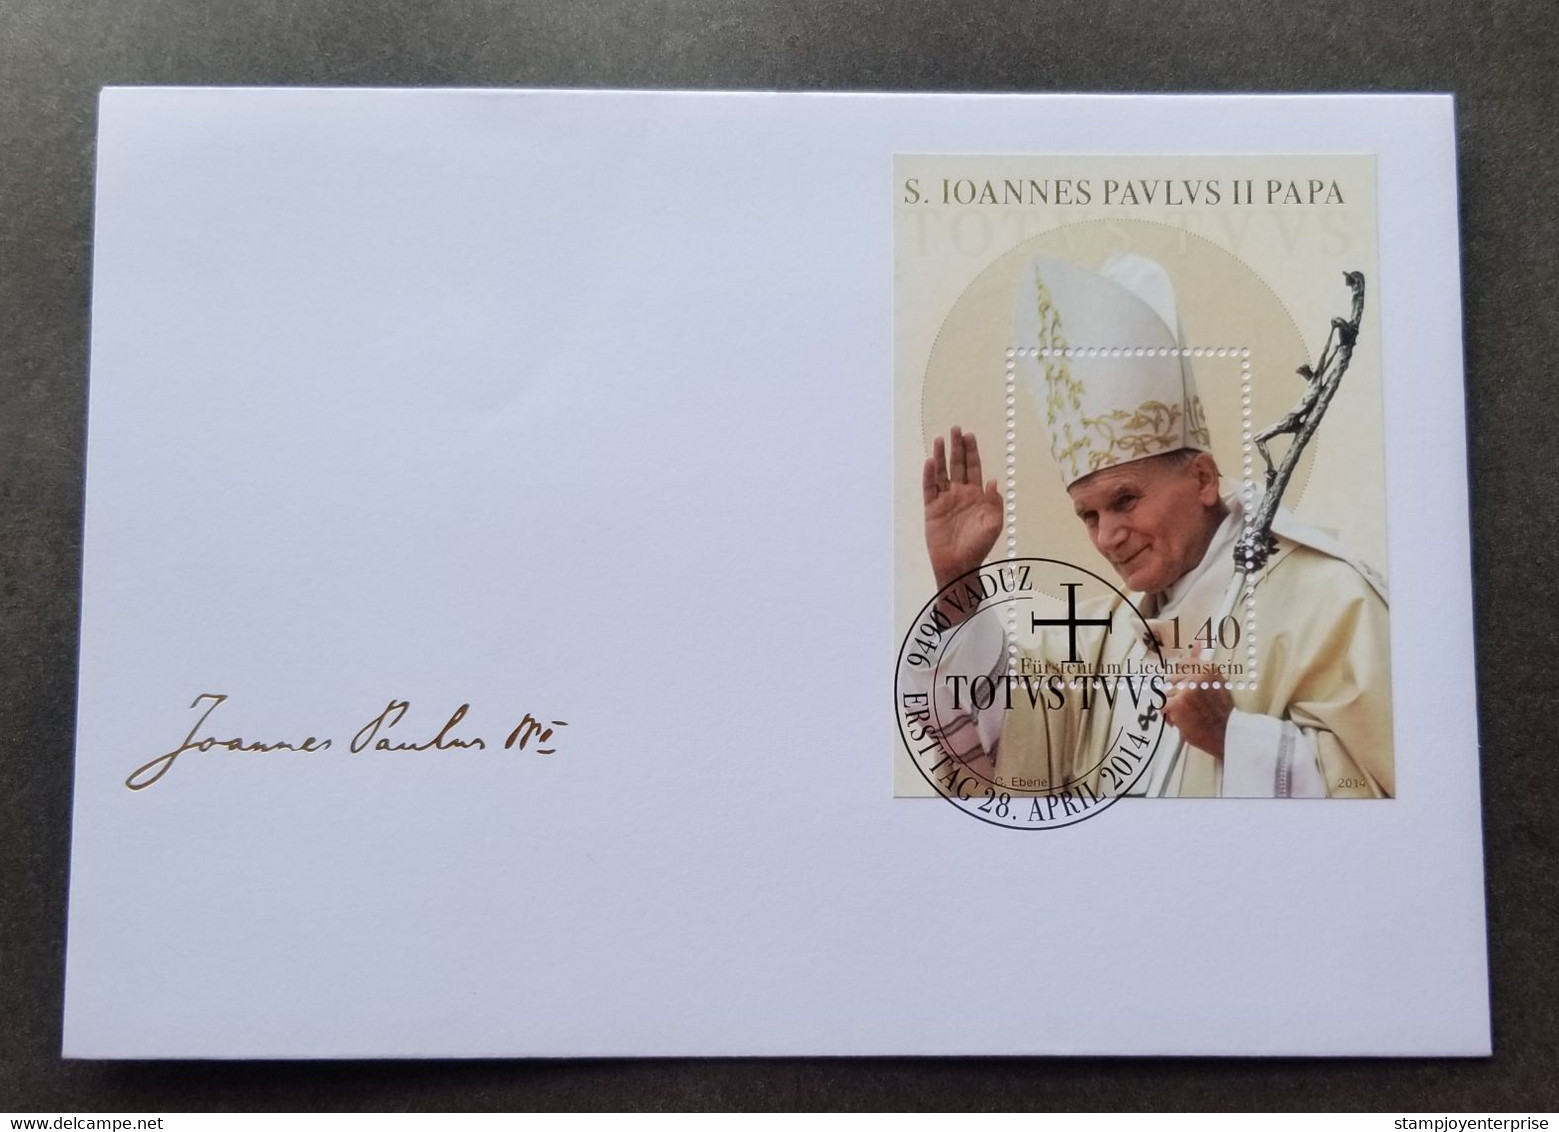 Liechtenstein Canonization Of Pope John Paul II 2014 (FDC) - Storia Postale